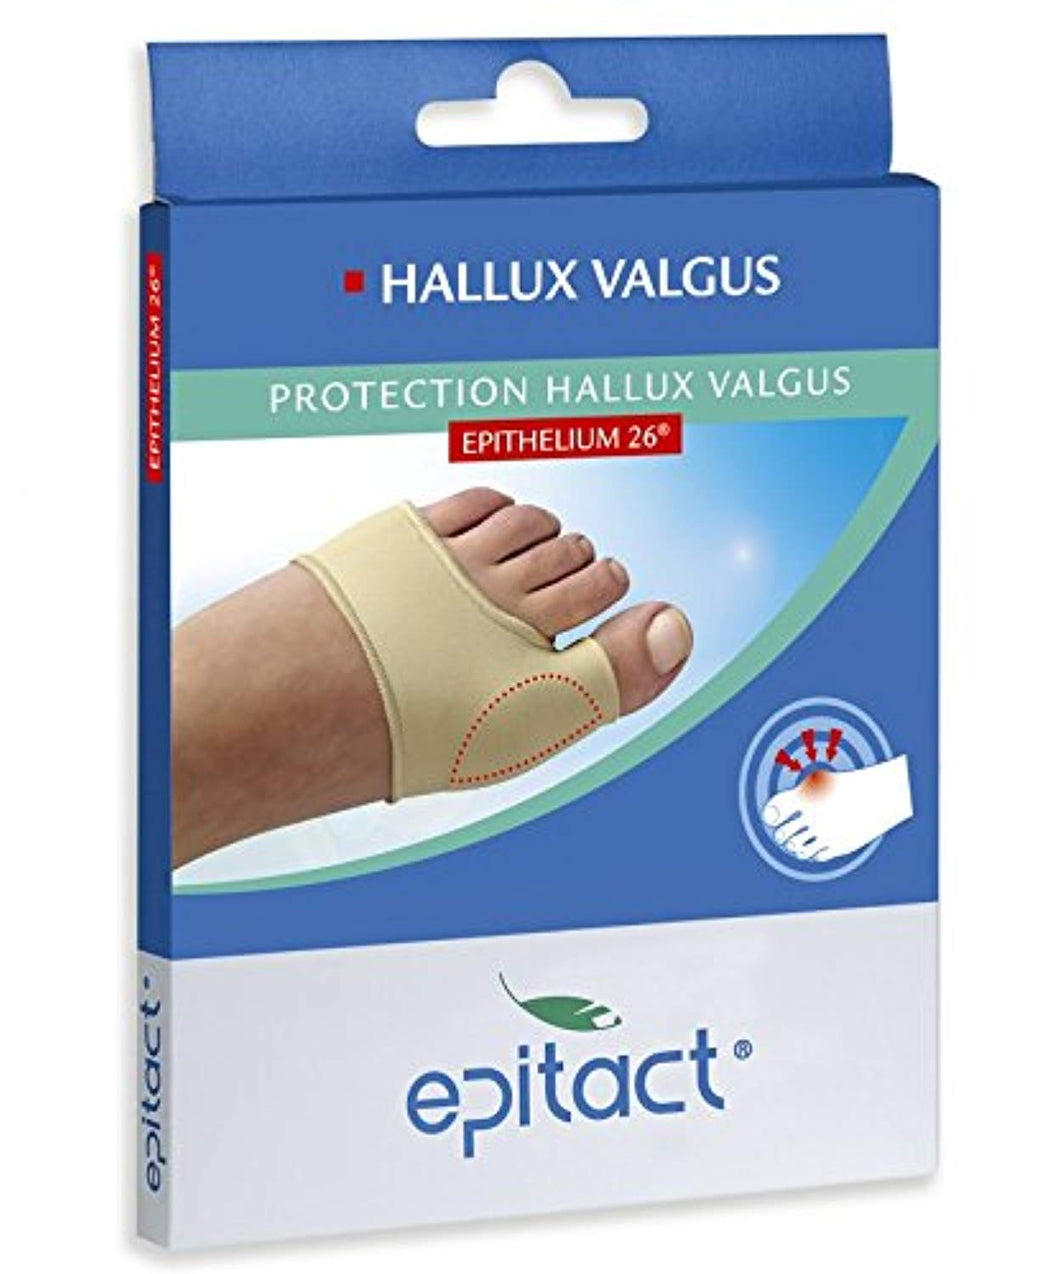 Epitact Millet Innovation Protection Hallux Valgus Oignon - Réduction Douleurs Et Frottements - Taille S 36-38